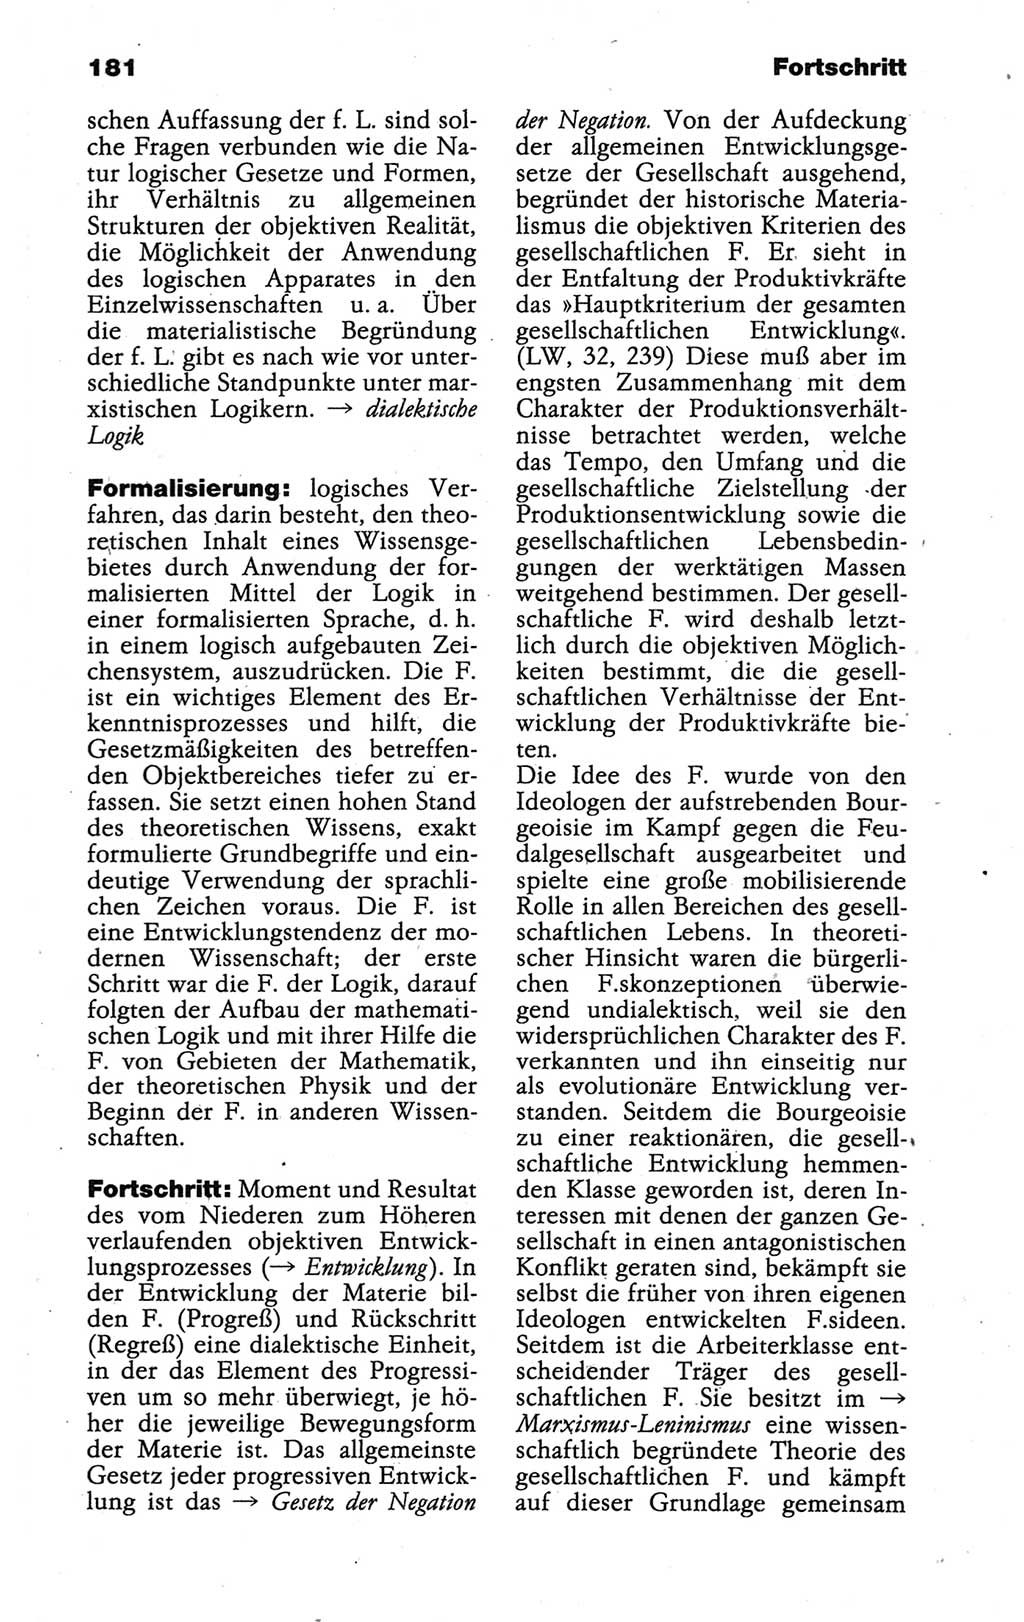 Wörterbuch der marxistisch-leninistischen Philosophie [Deutsche Demokratische Republik (DDR)] 1986, Seite 181 (Wb. ML Phil. DDR 1986, S. 181)